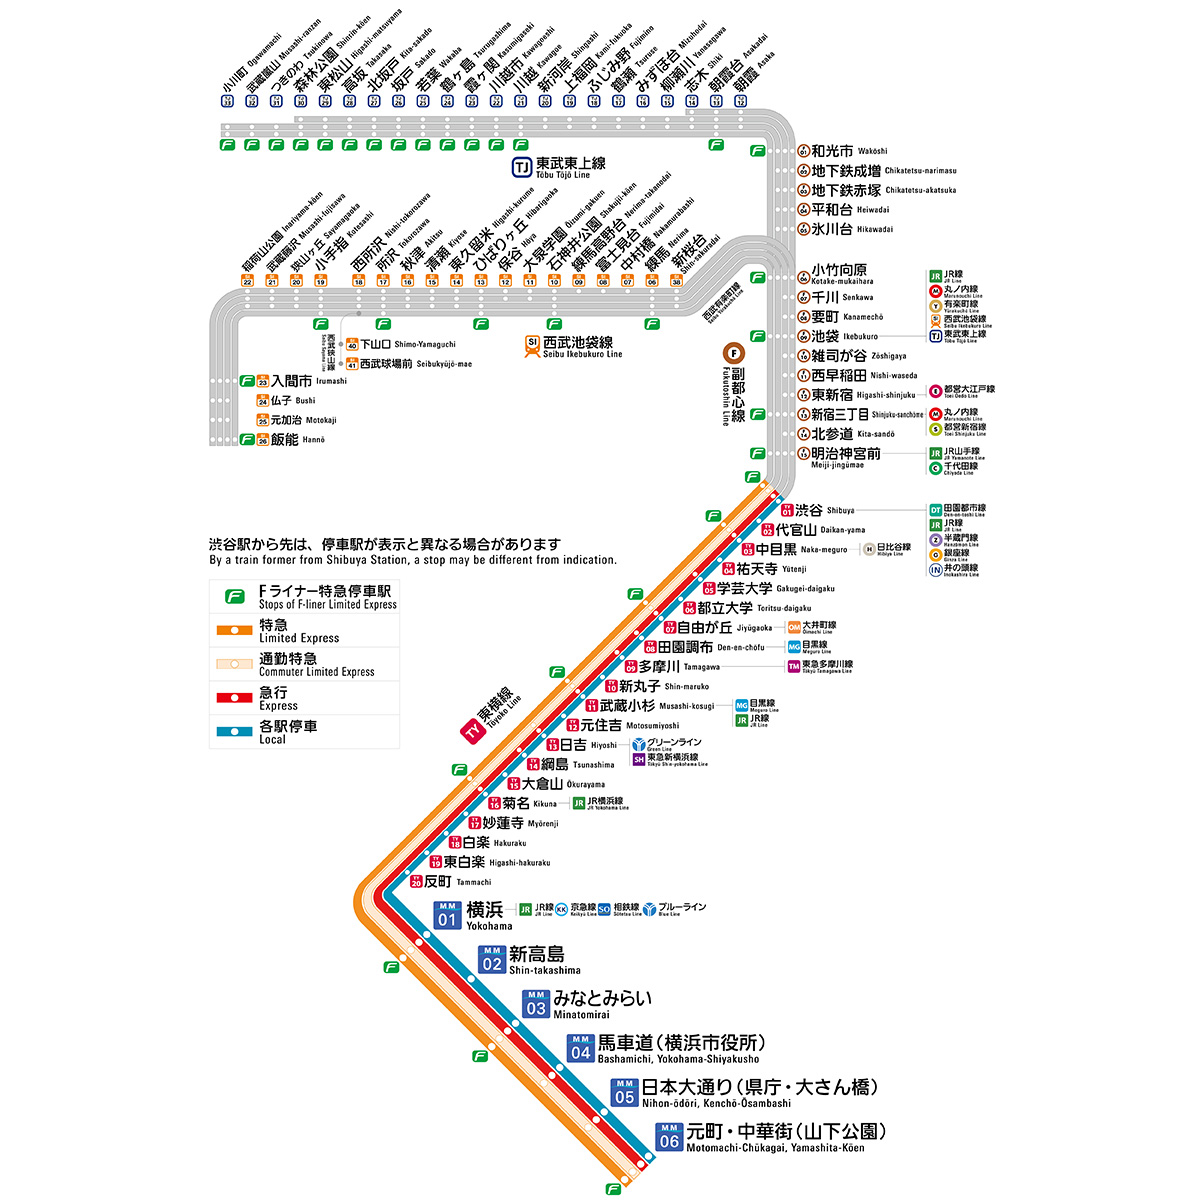 路線図 乗り換え案内 みなとみらい線 横浜高速鉄道株式会社